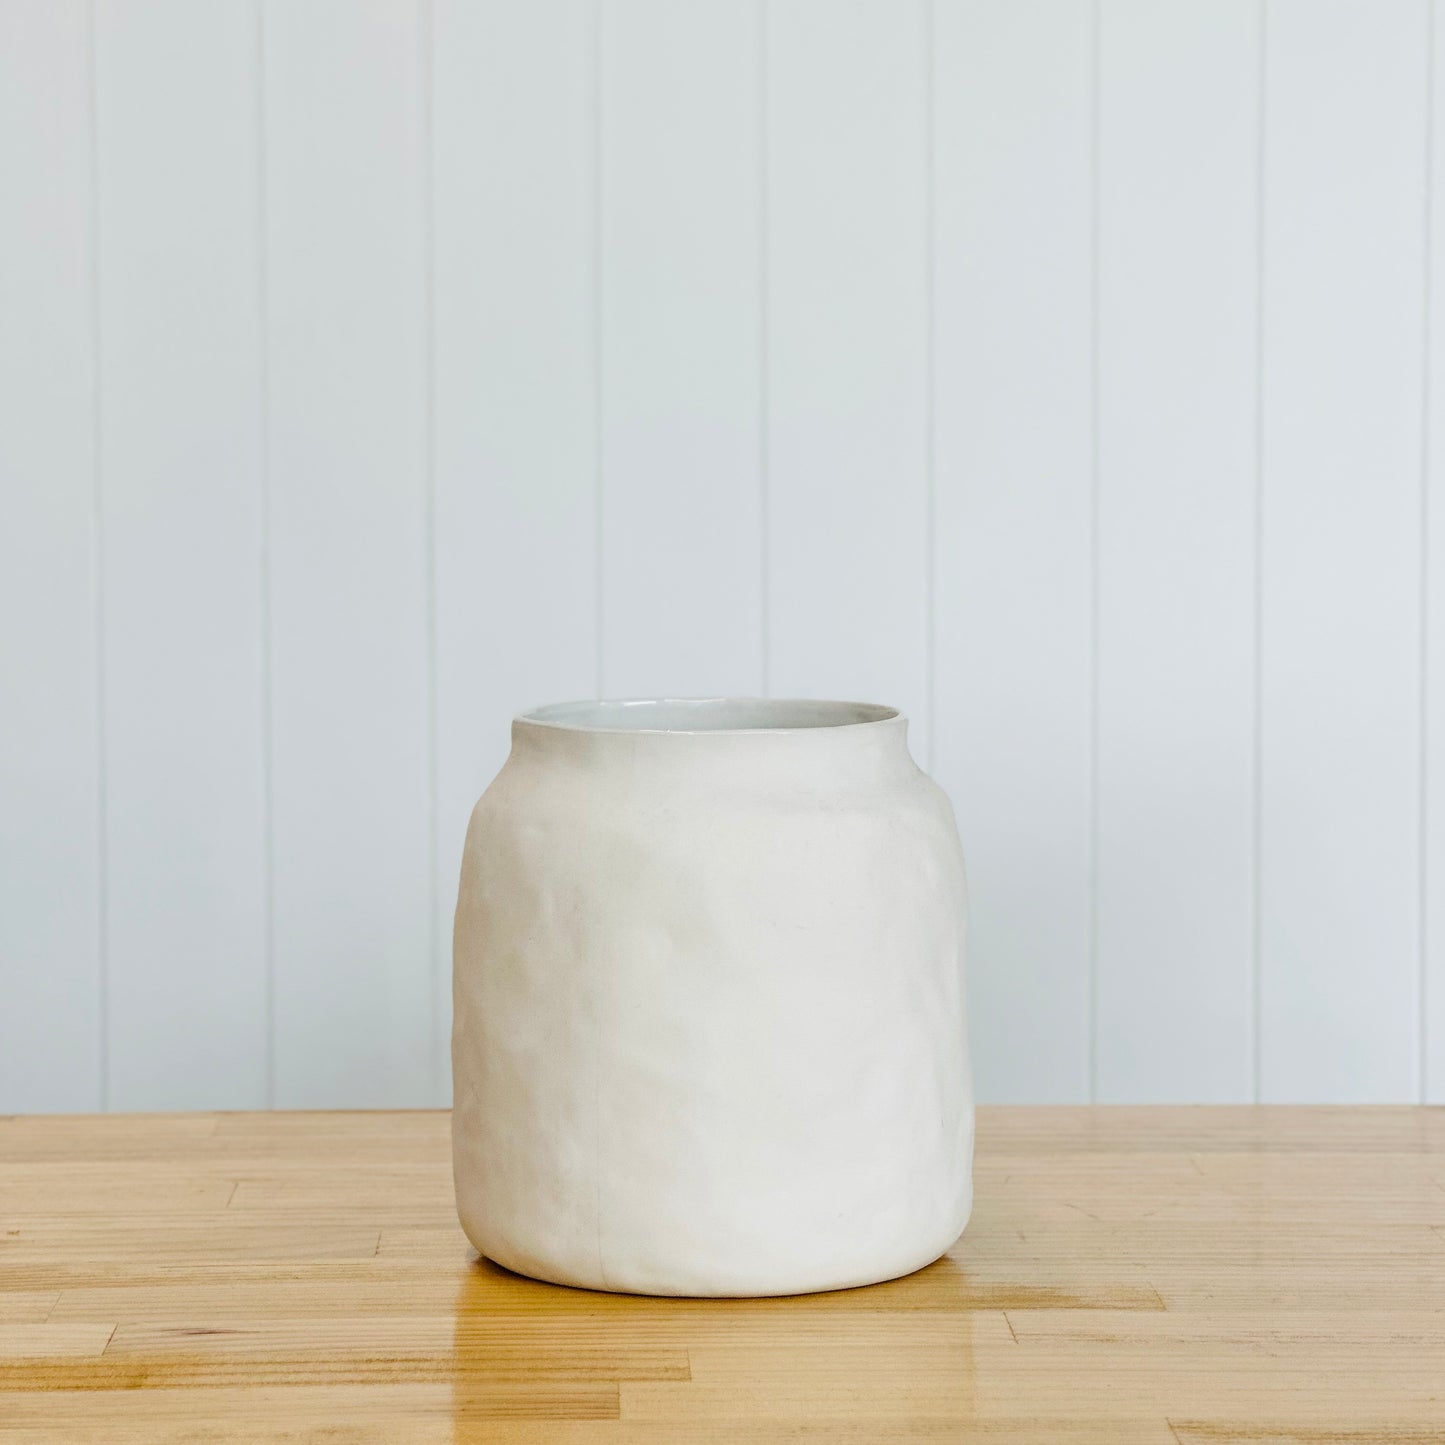 Ceramic Textured Vase - Snow White